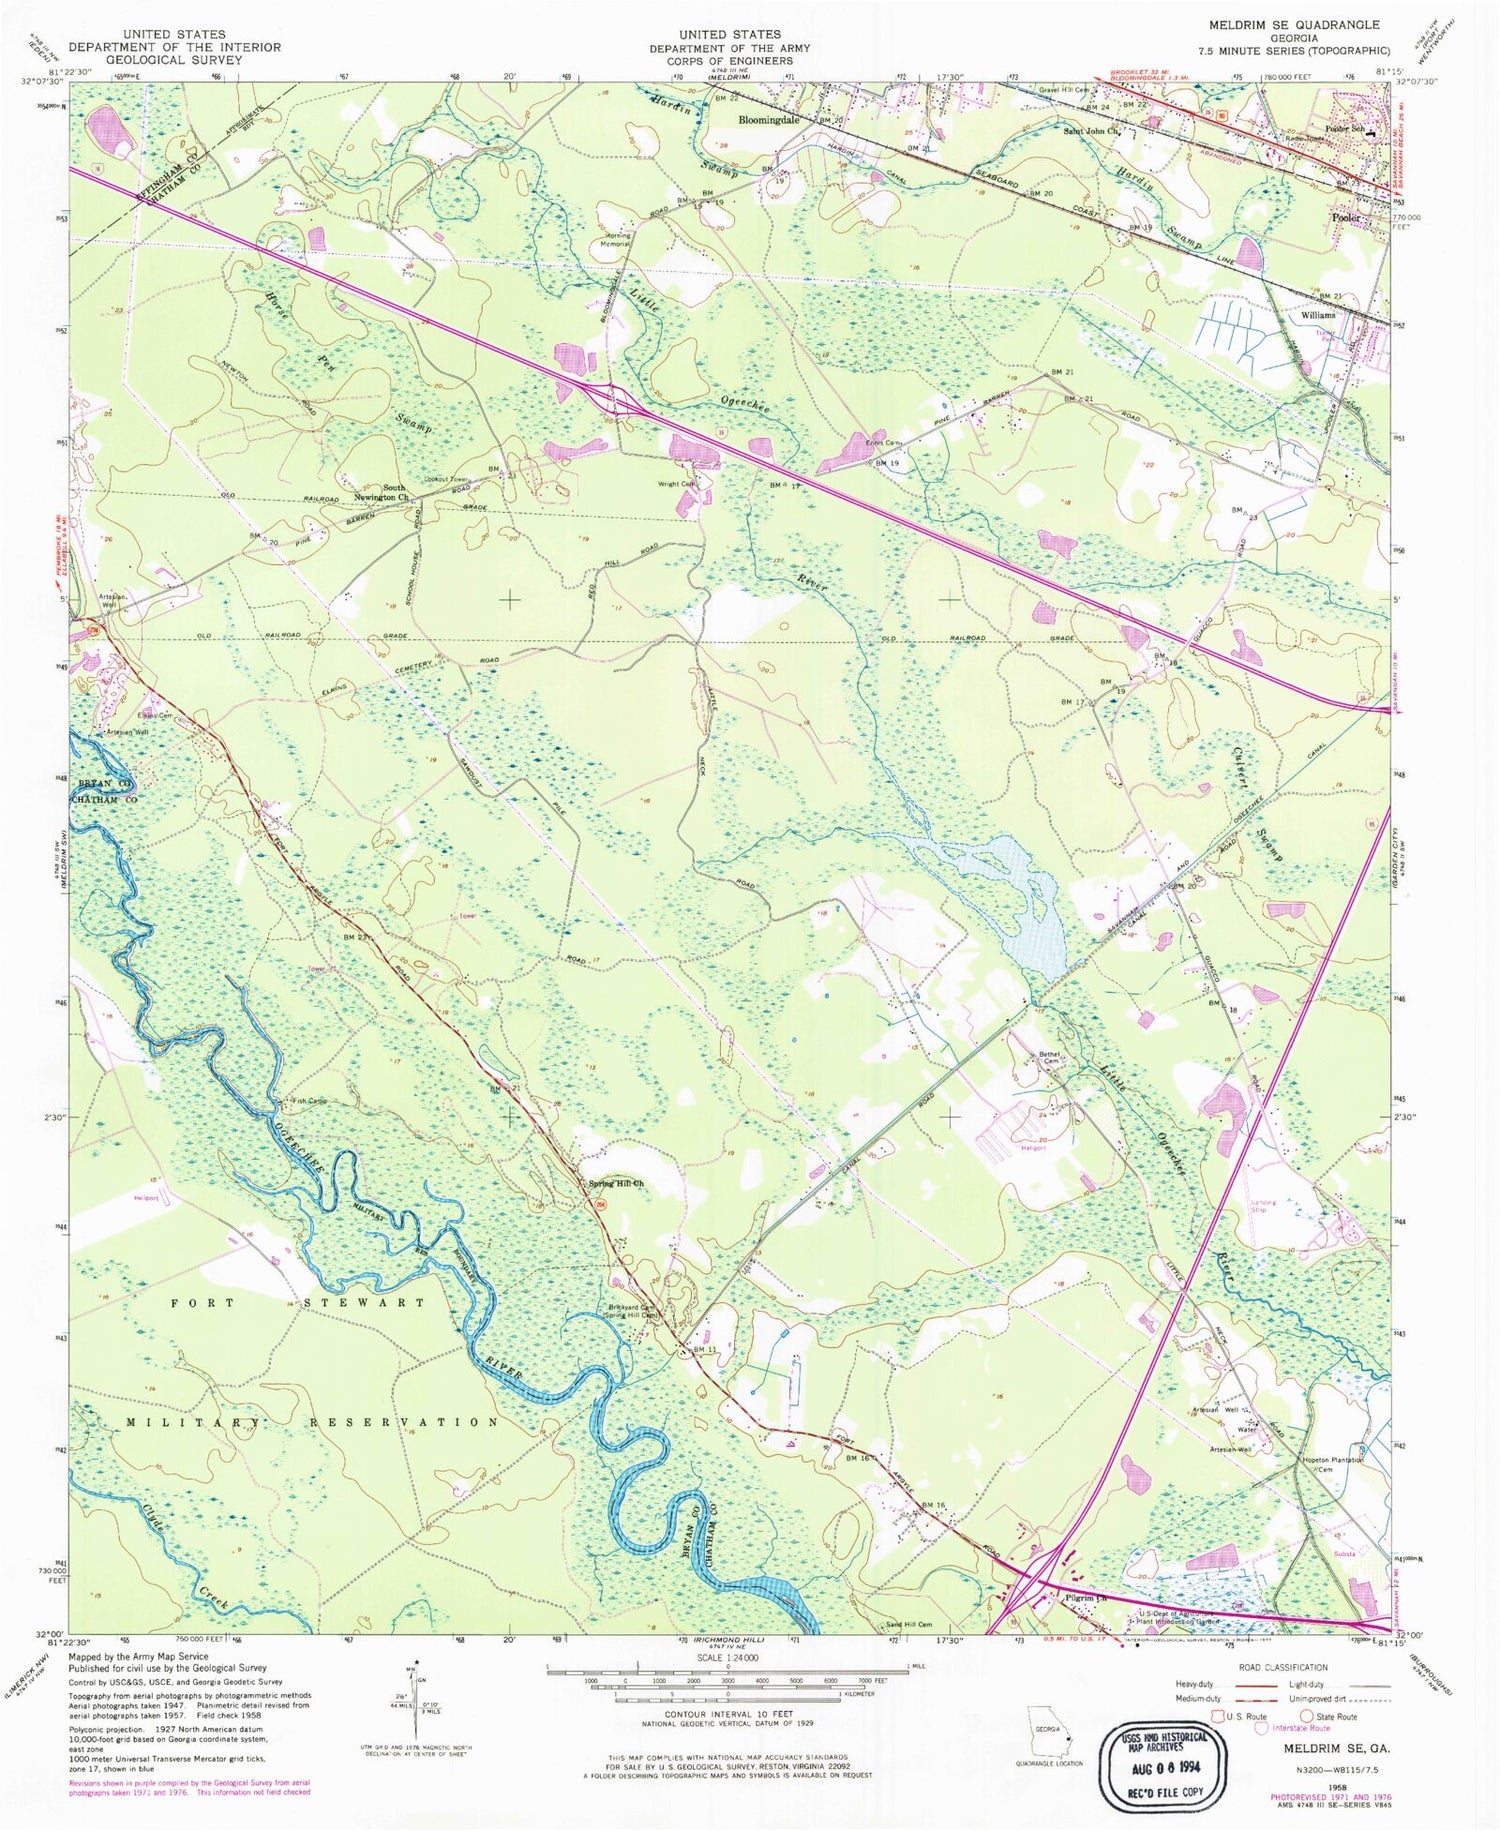 Classic USGS Meldrim SE Georgia 7.5'x7.5' Topo Map Image